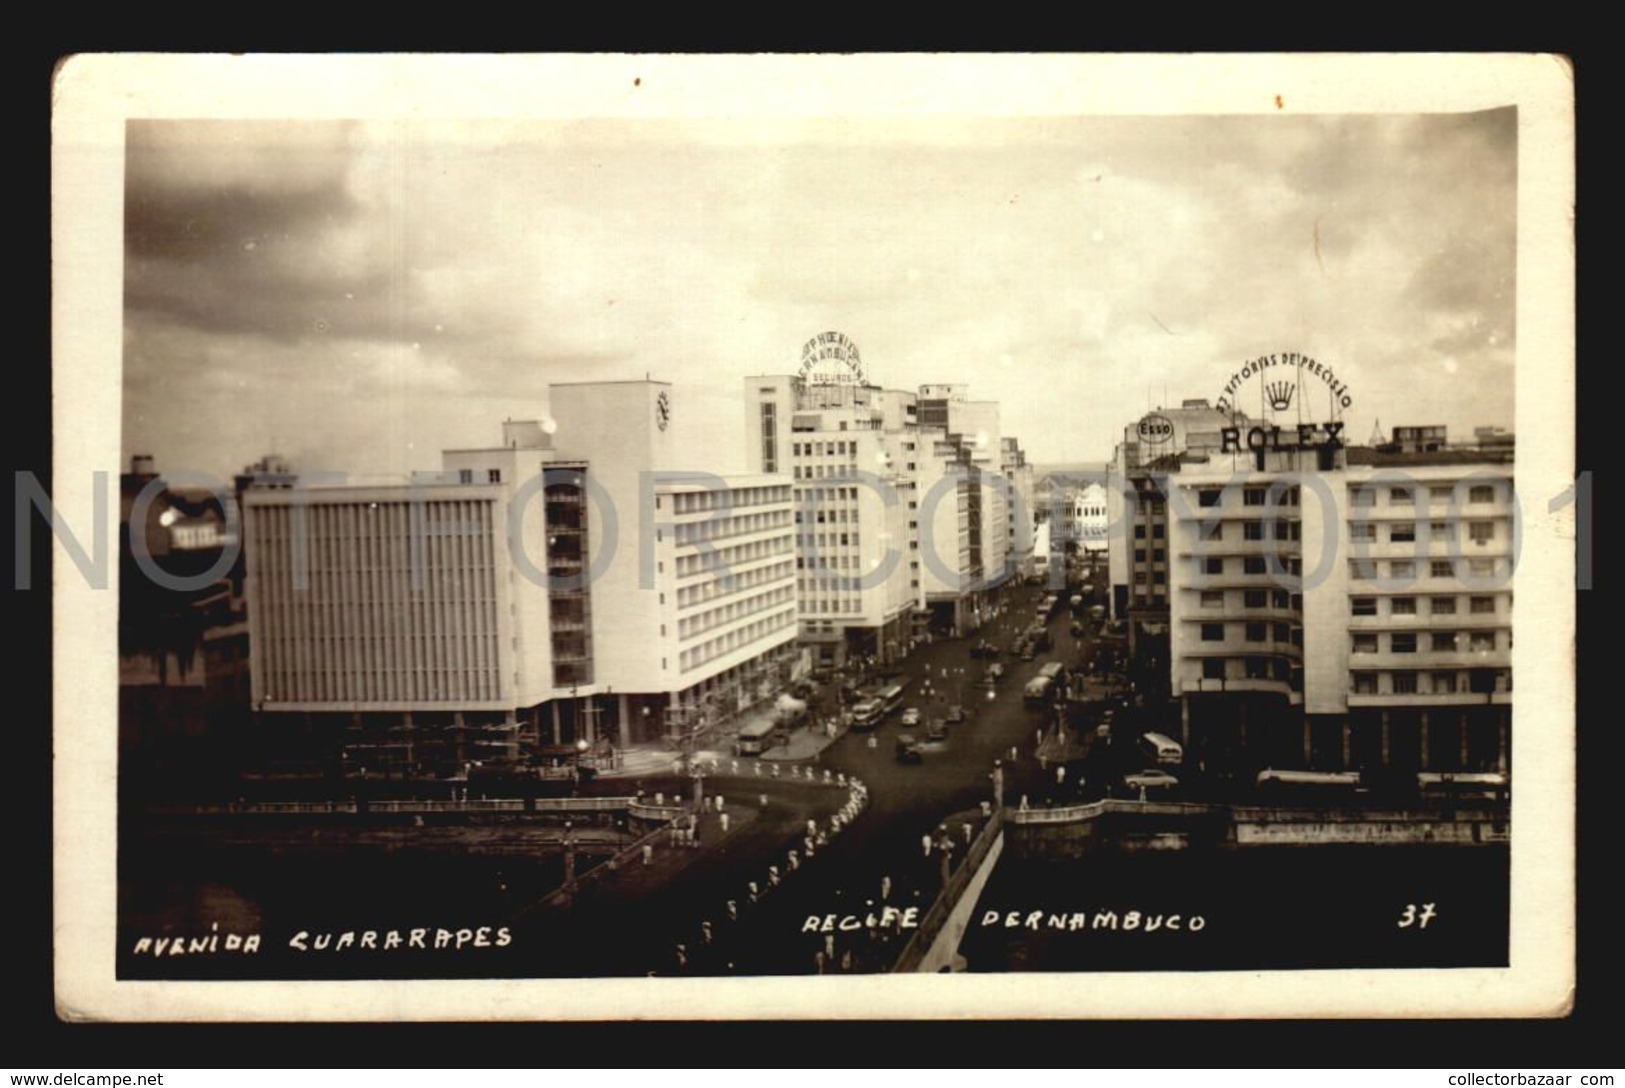 Brazil Pernambuco Guararapes Cartao Postal Recife Rolex Ad  Real Photo RPPC Ca1930 Vintage Original Postcard (w6-155) - Recife